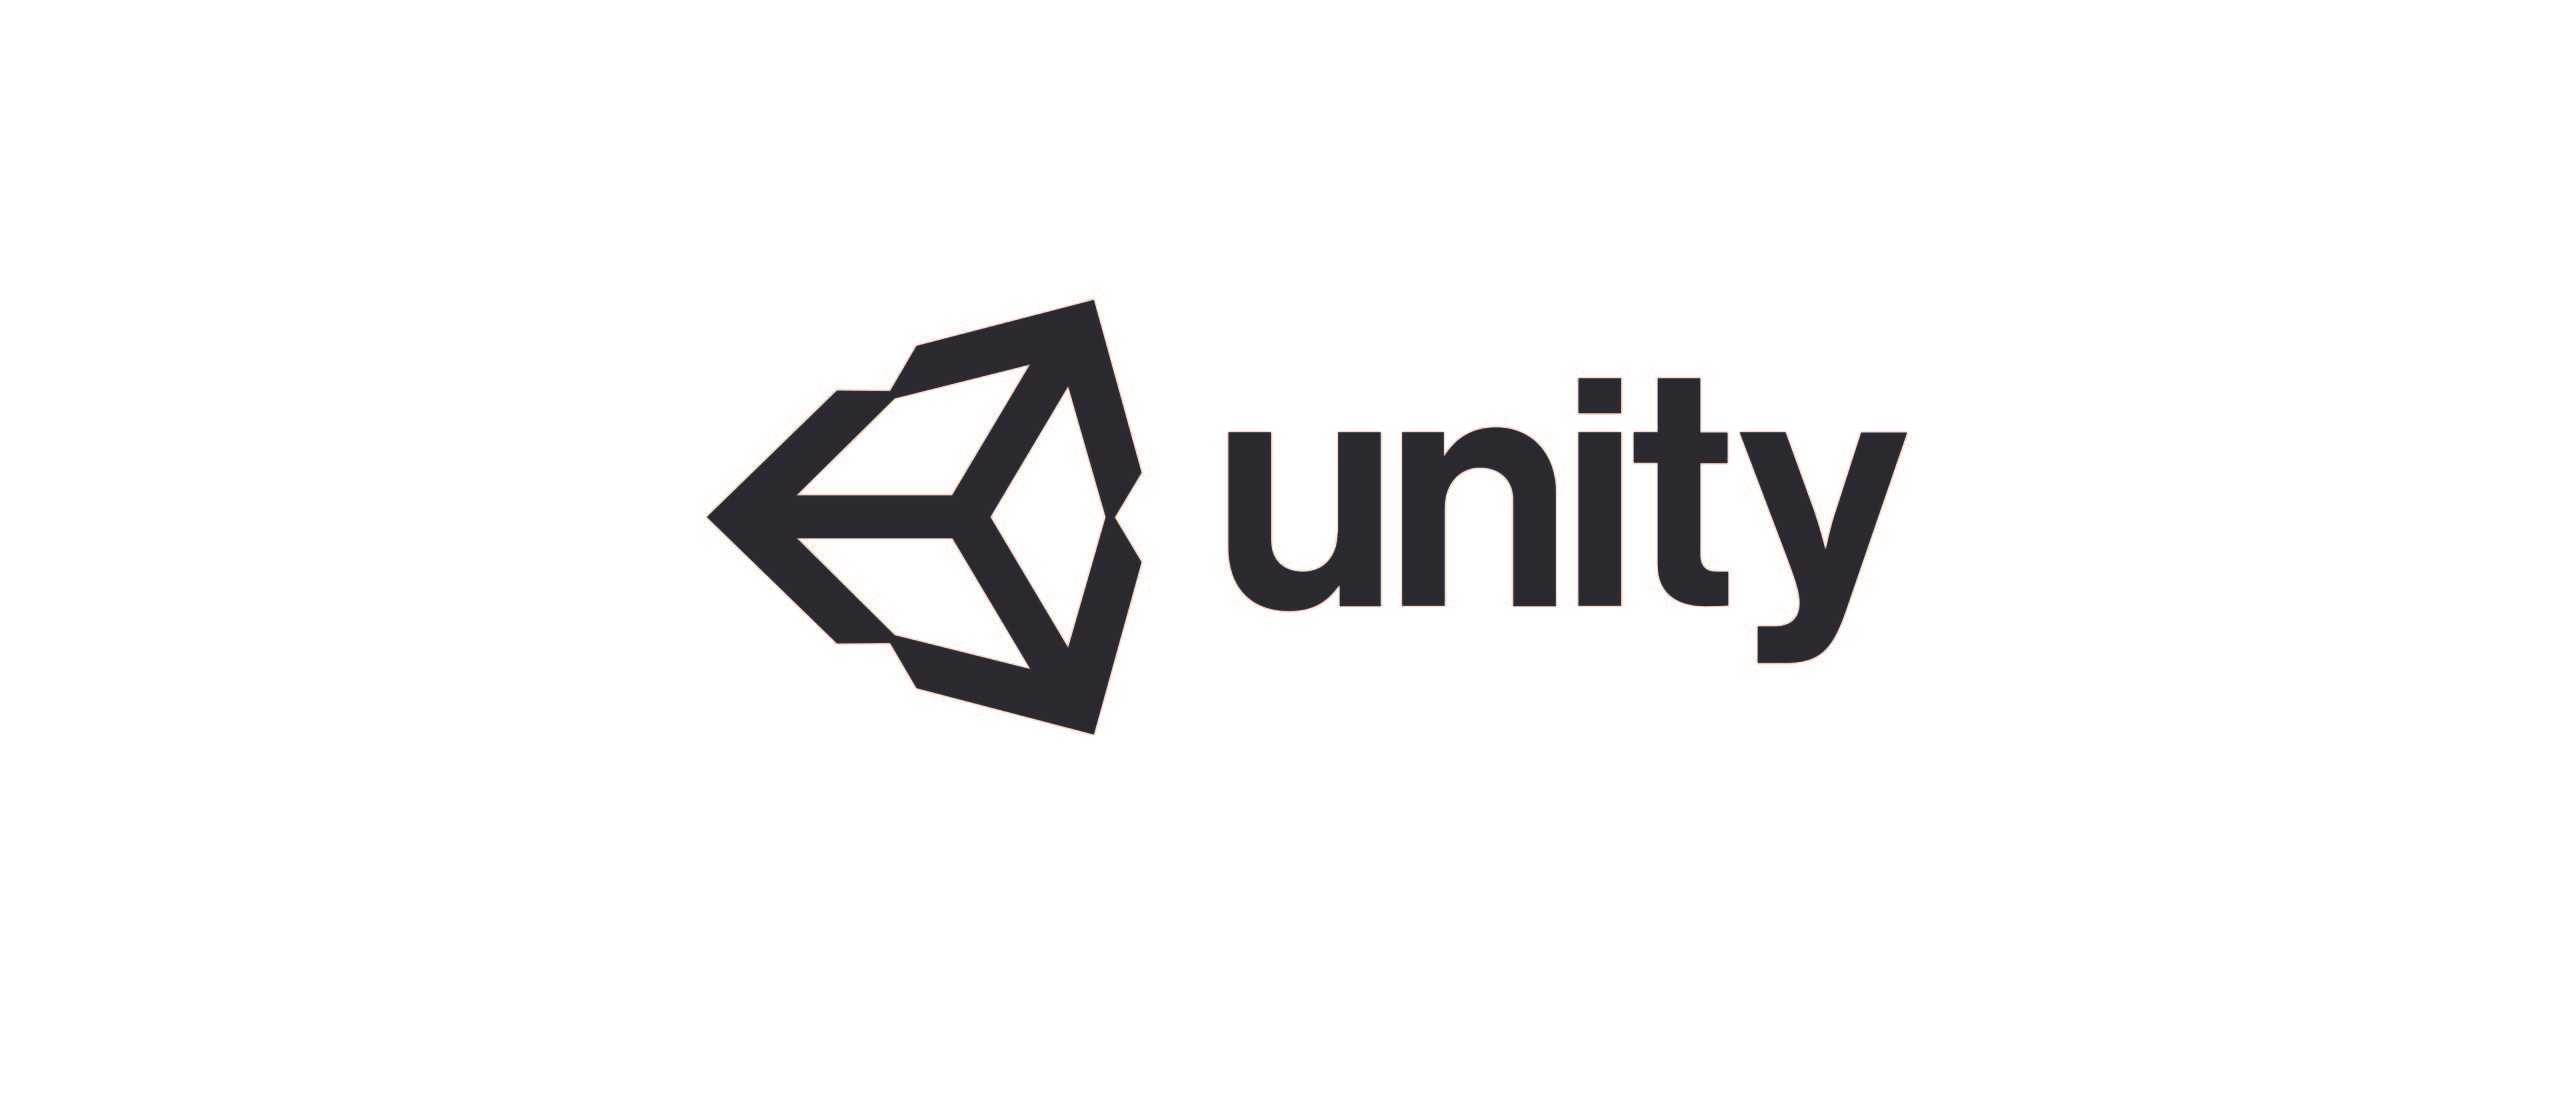 Lập trình game 2D bằng Unity (2020)